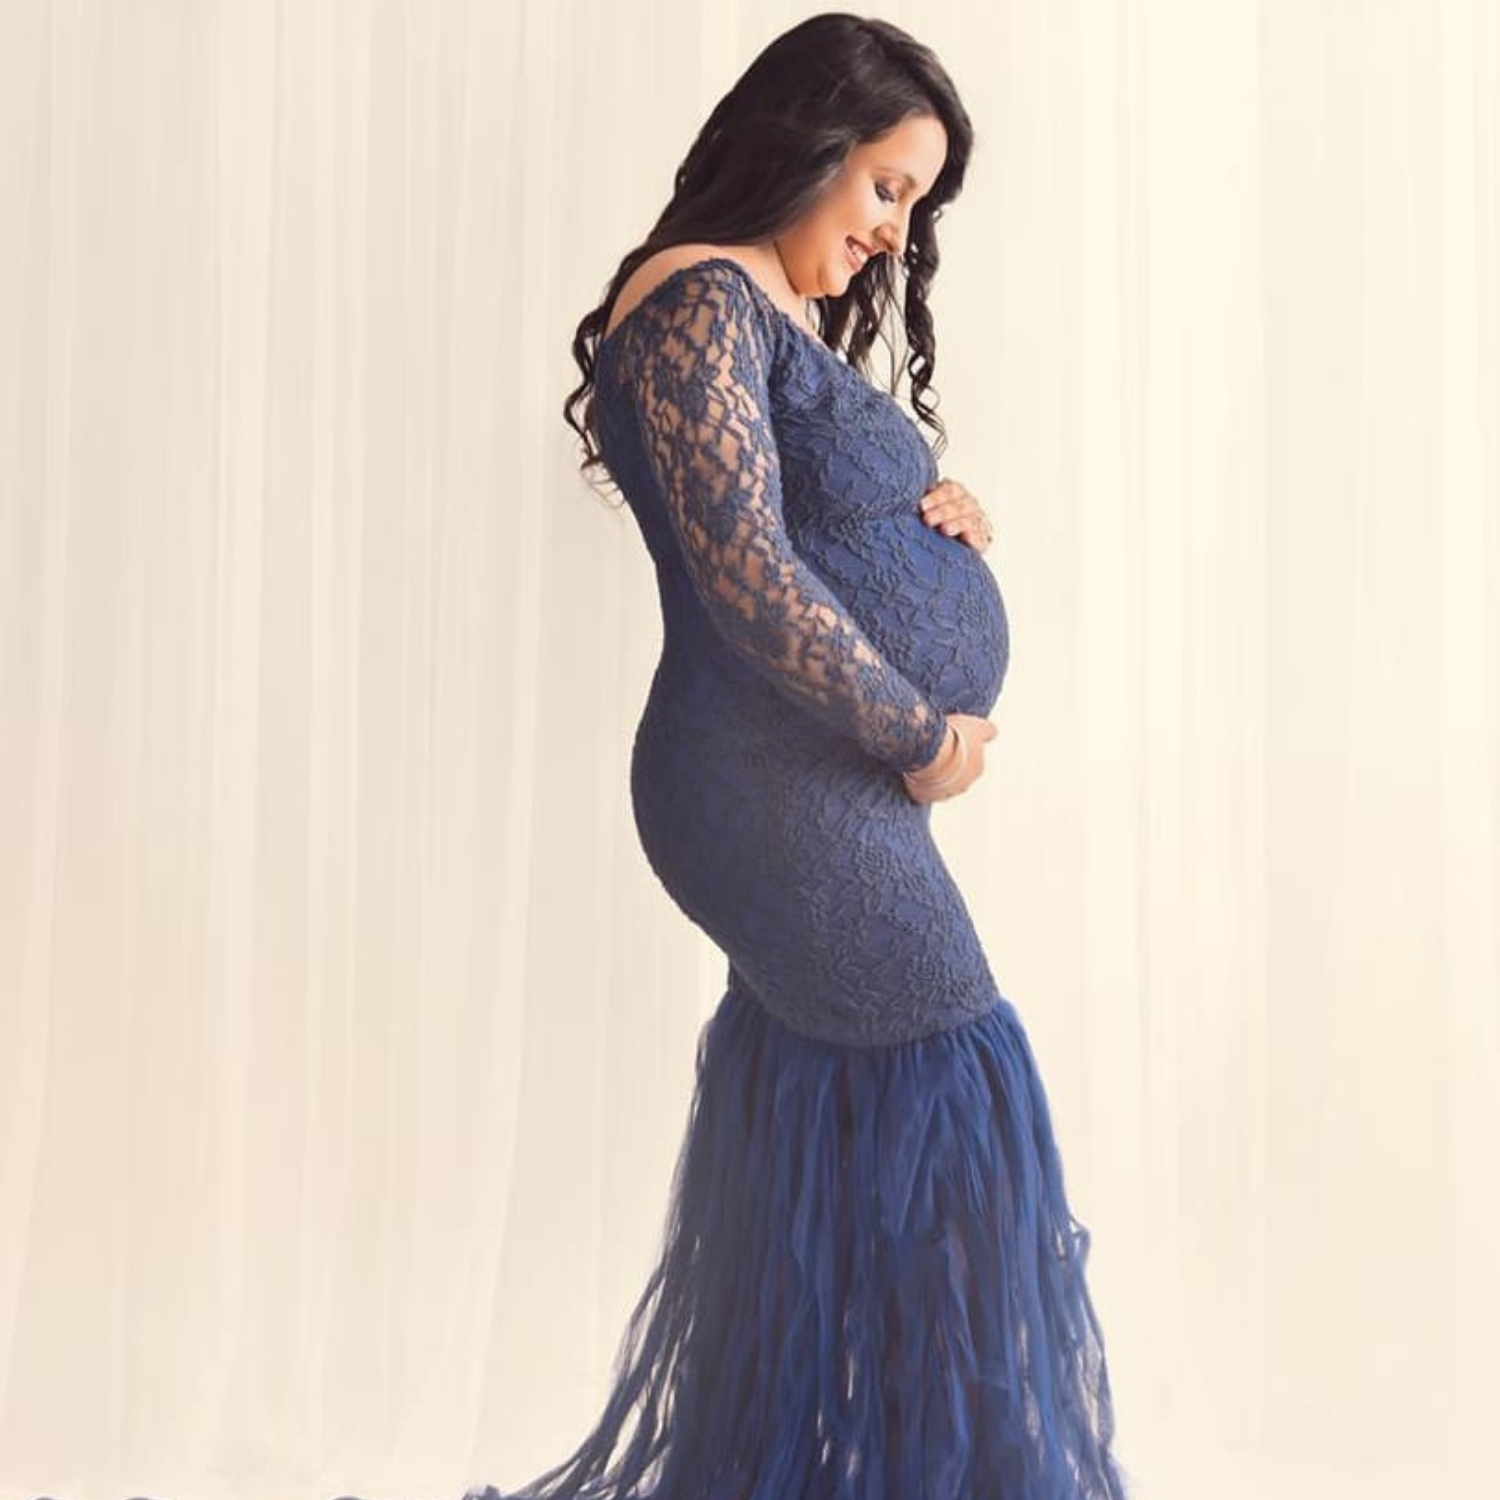 The Sculpting Rib Long Sleeve Dress Maternity Dress | BUMPSUIT Maternity